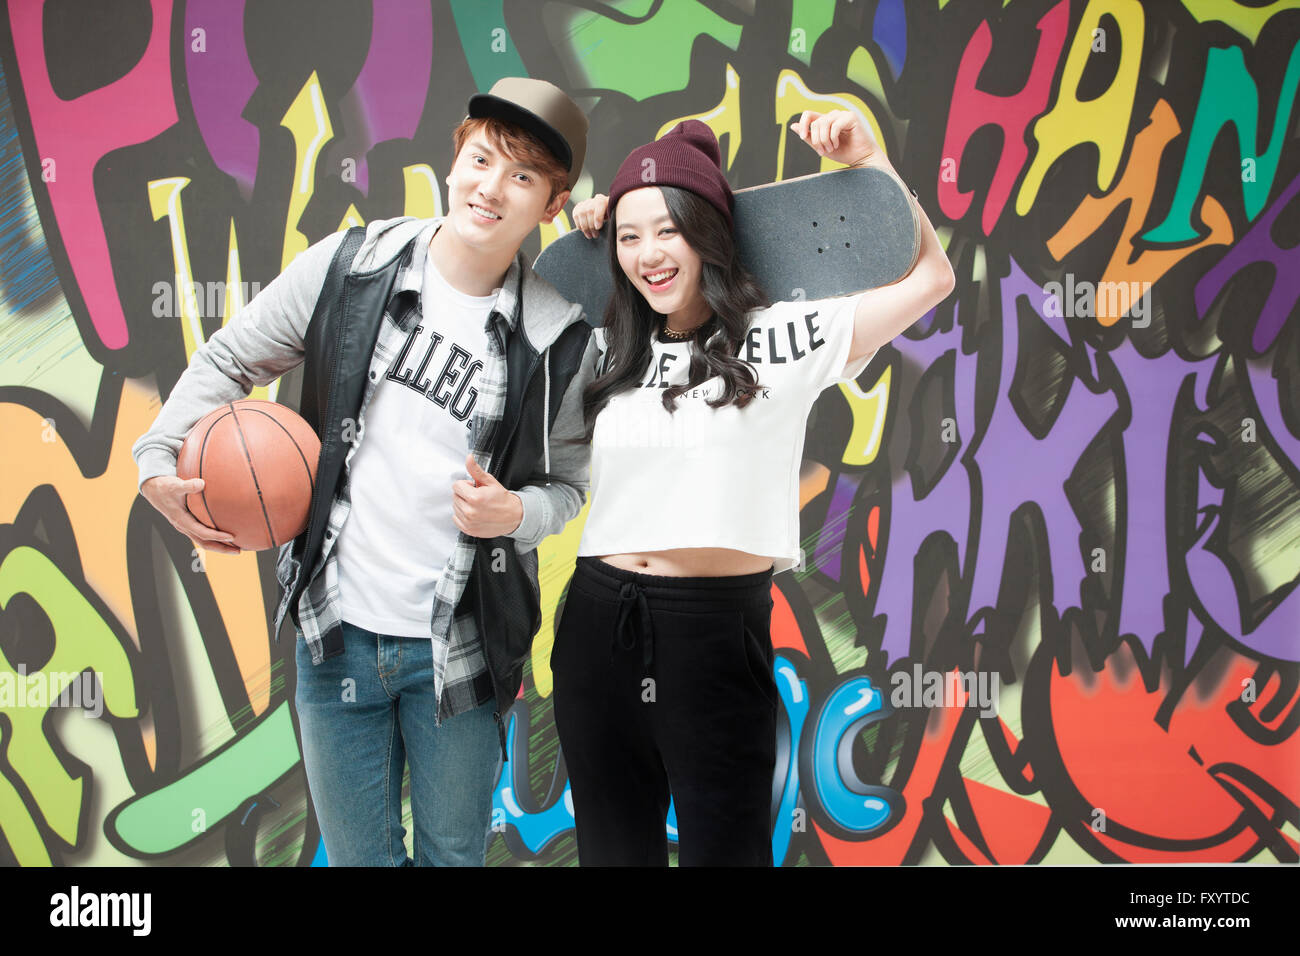 Junge, lächelnde paar im Hip-Hop-Stil hält ein Basketball- und ein Skateboard gegen Graffiti-Kunst Stockfoto